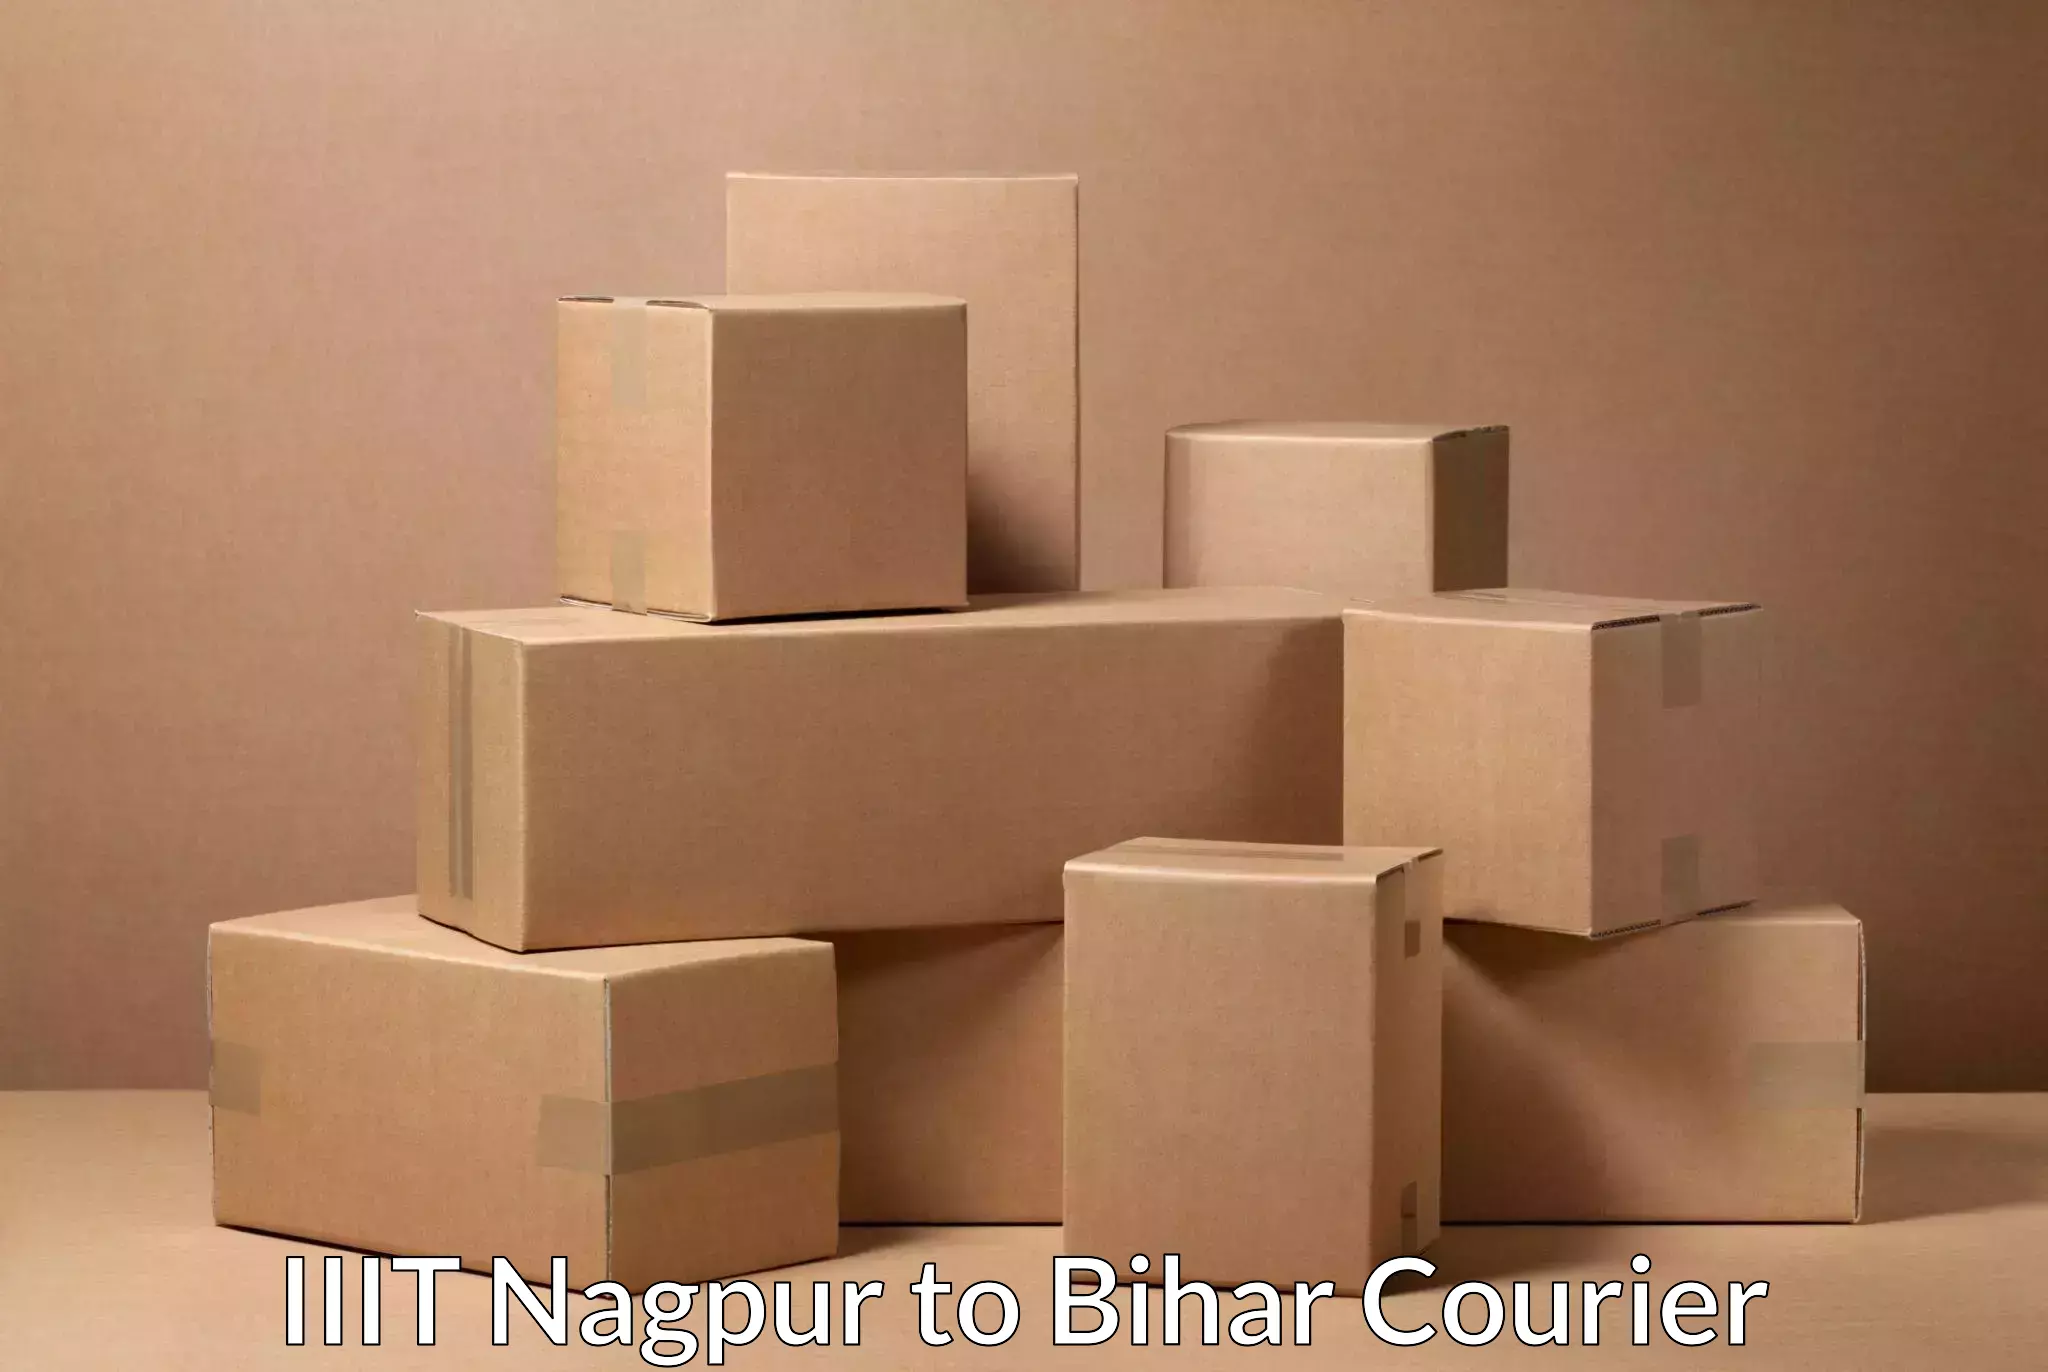 Flexible delivery scheduling IIIT Nagpur to Biraul